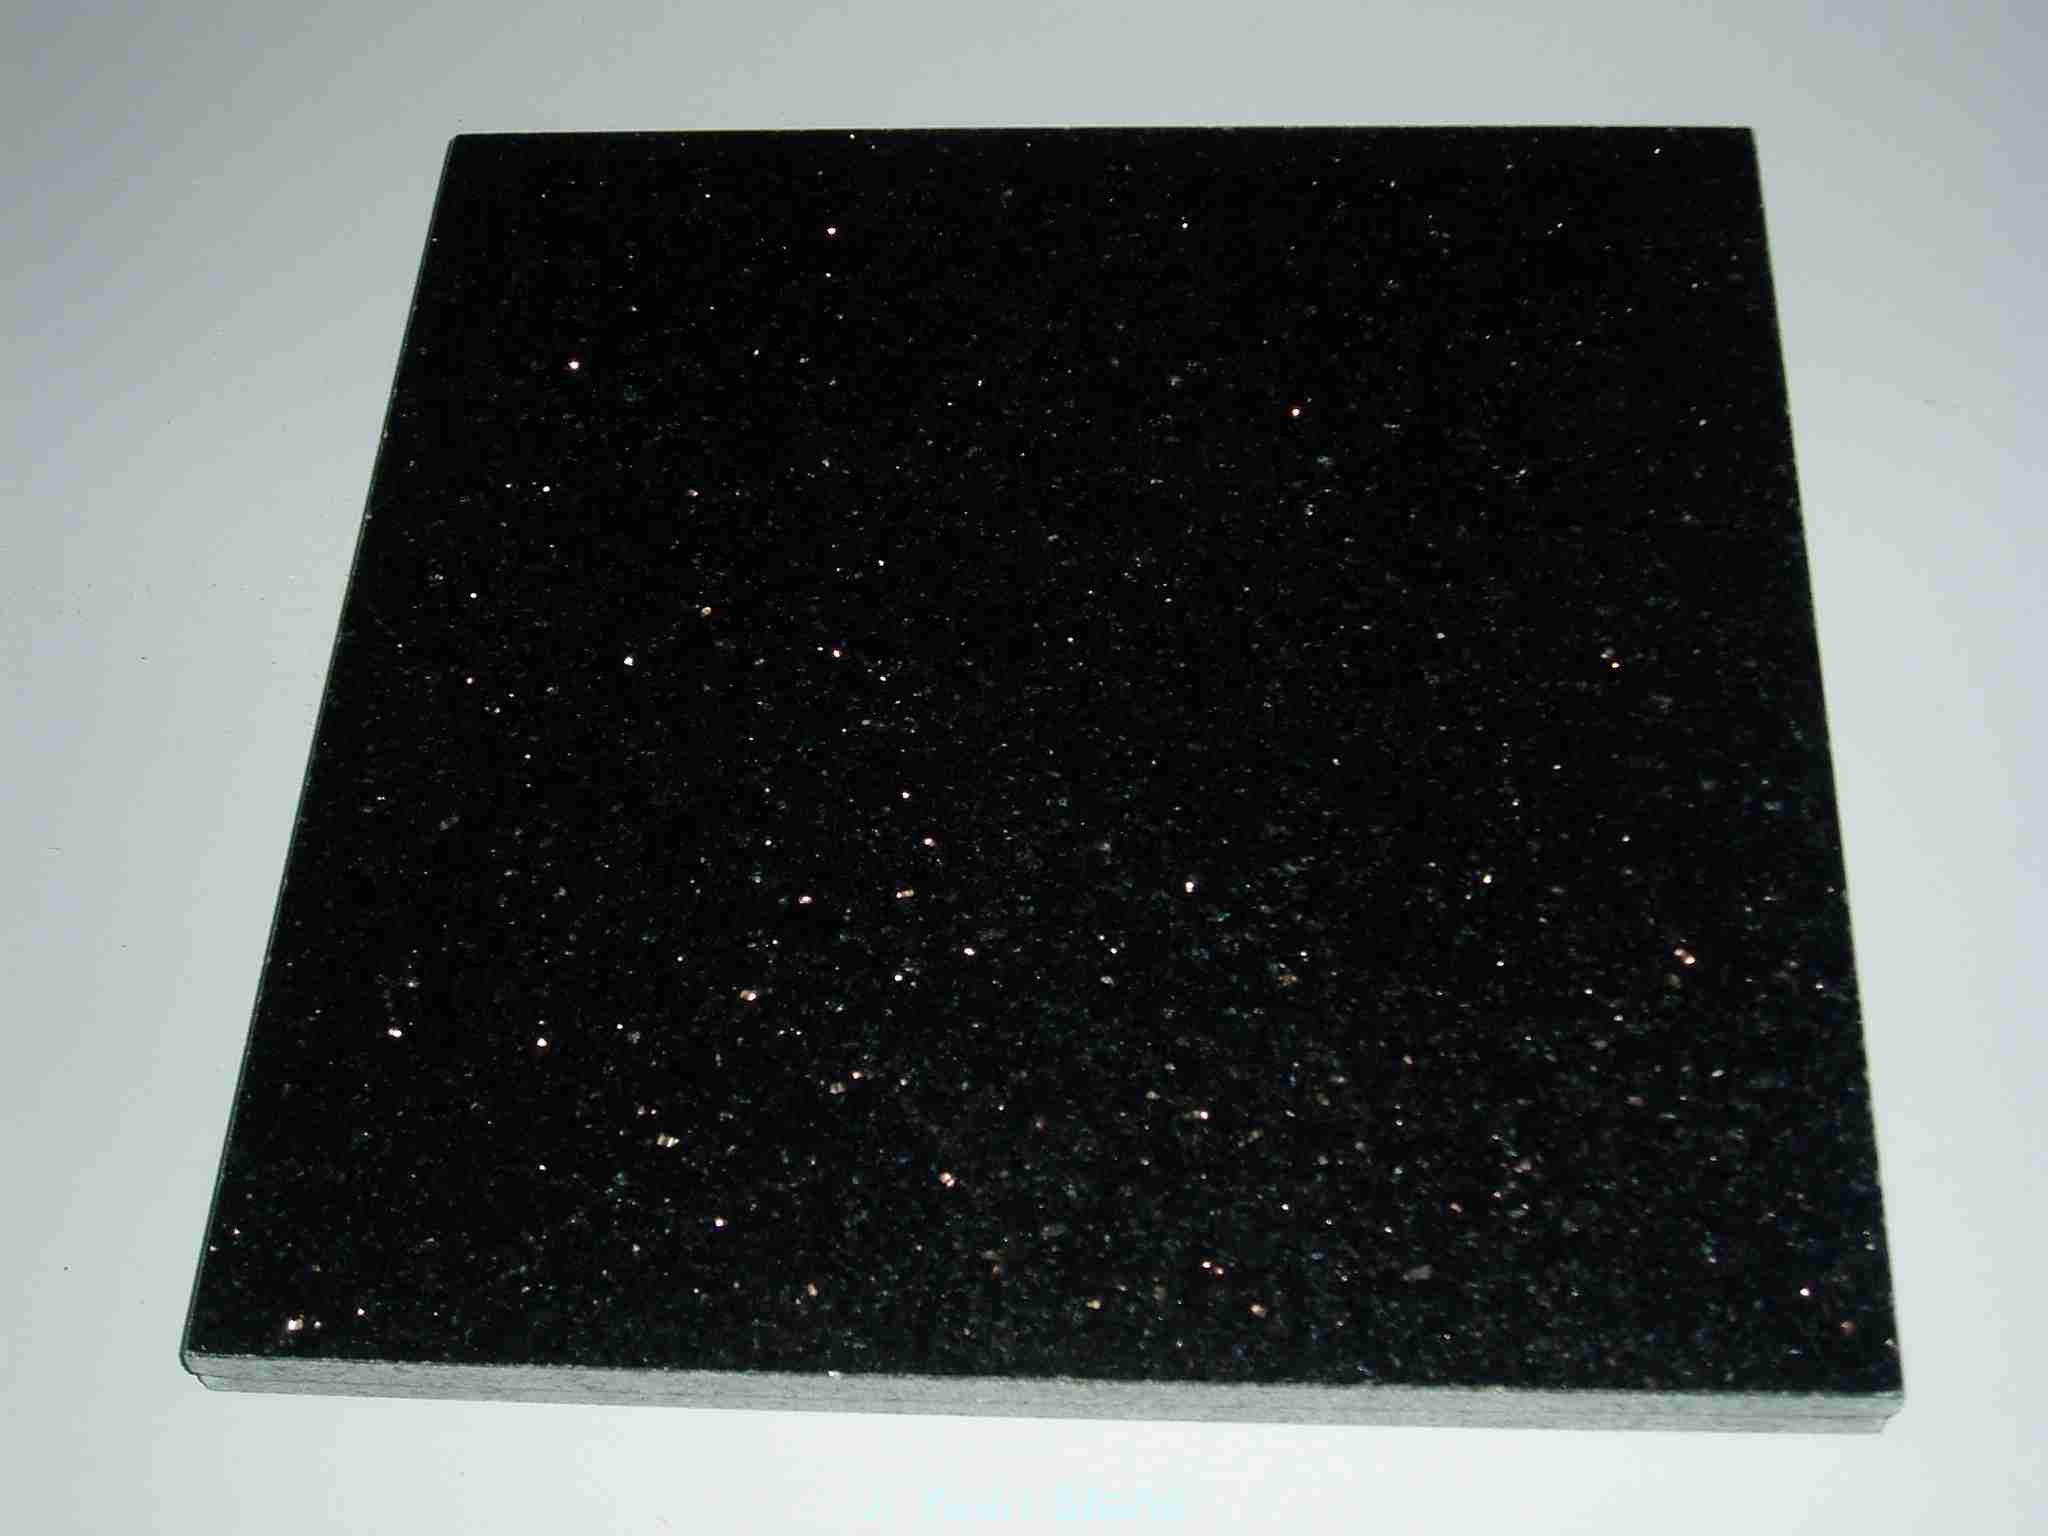 Black galaxy granite price per square foot,black star galaxy granite tiles,black galaxy stone,black galaxy granite tiles cheap,black galaxy floor tiles,black galaxy granite kitchen